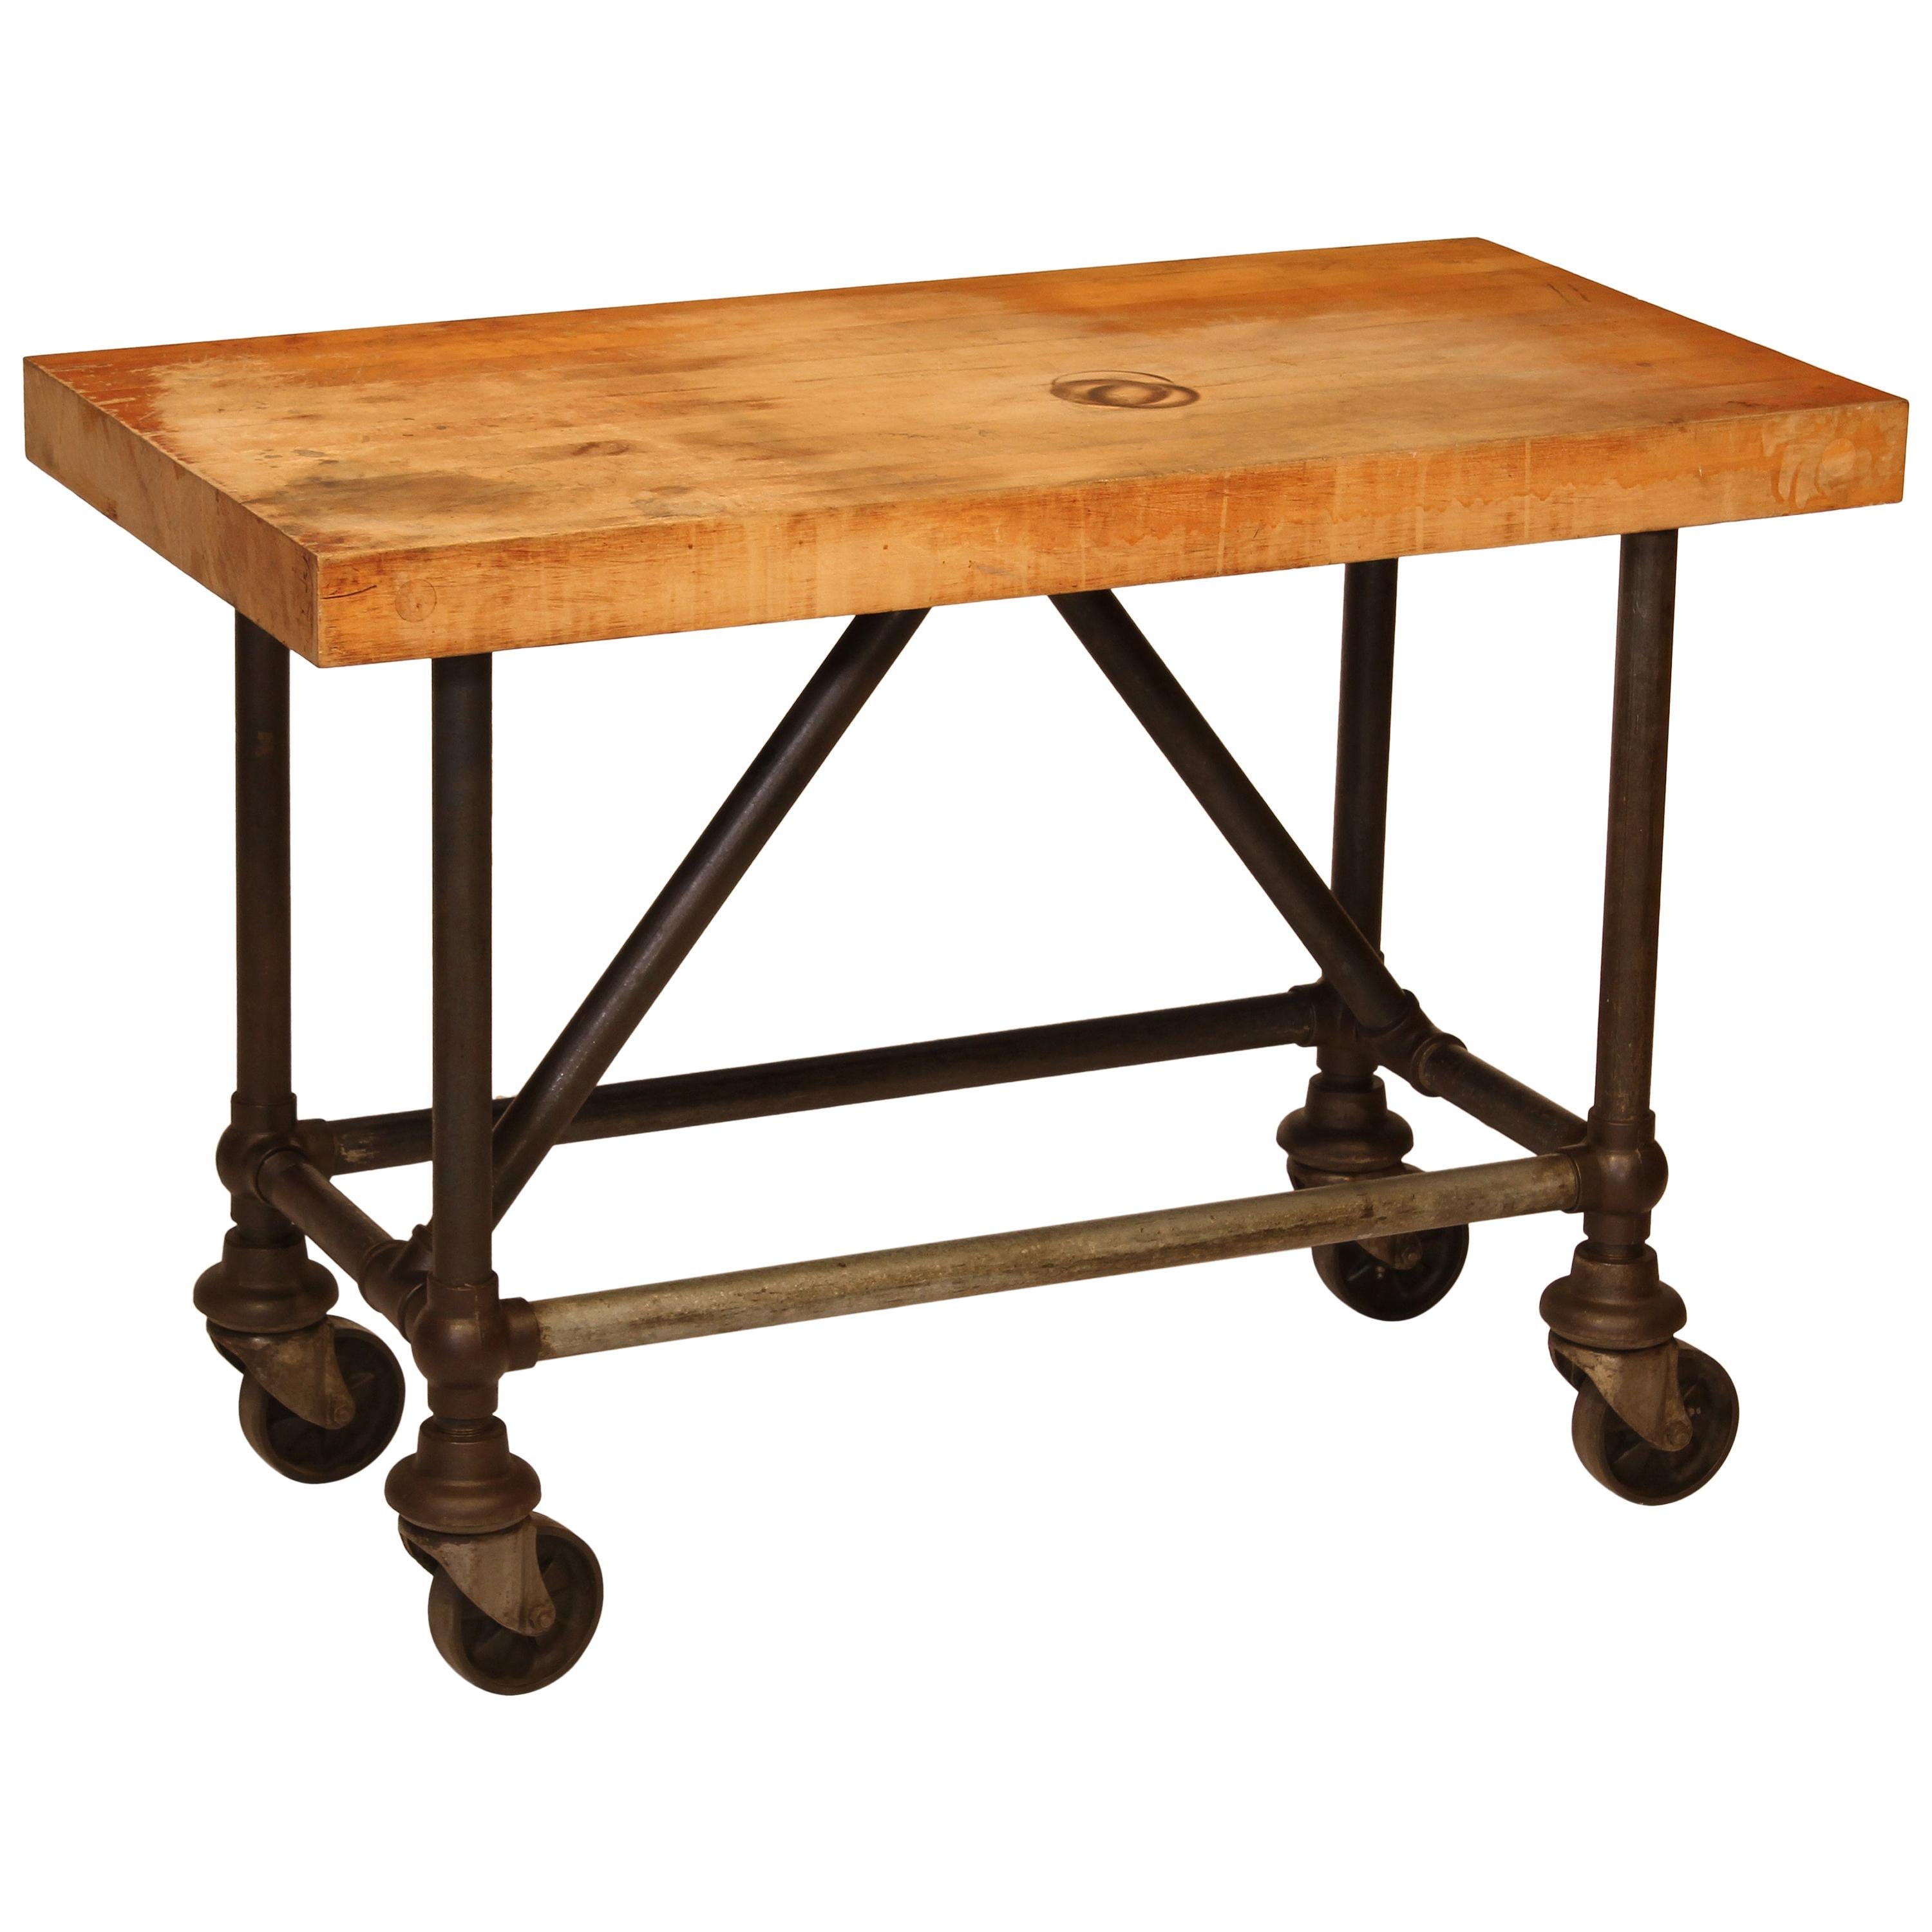 Original American Industrial Butcher Block Pipe Table / Bar Cart